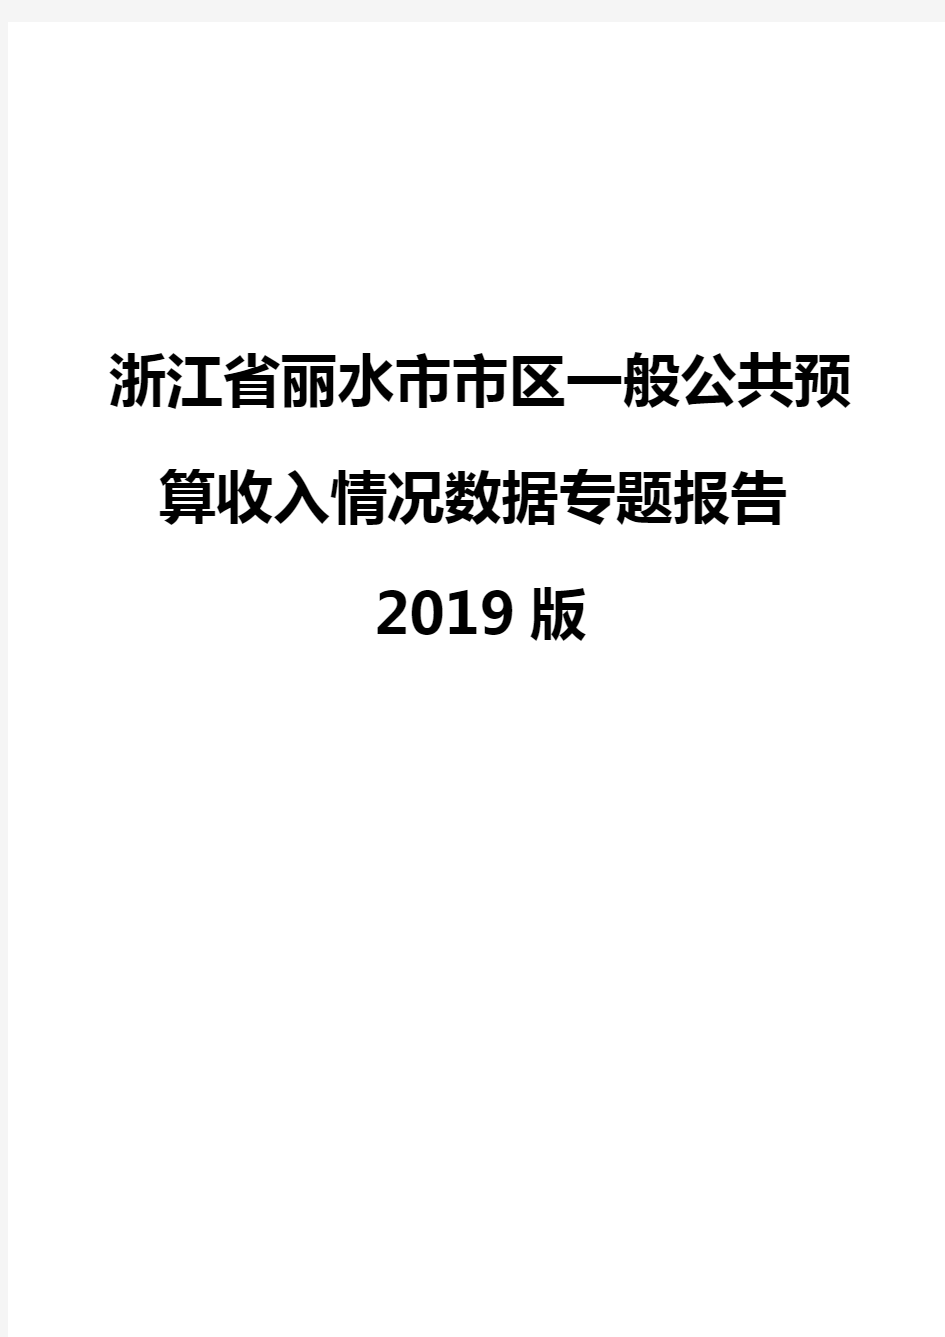 浙江省丽水市市区一般公共预算收入情况数据专题报告2019版